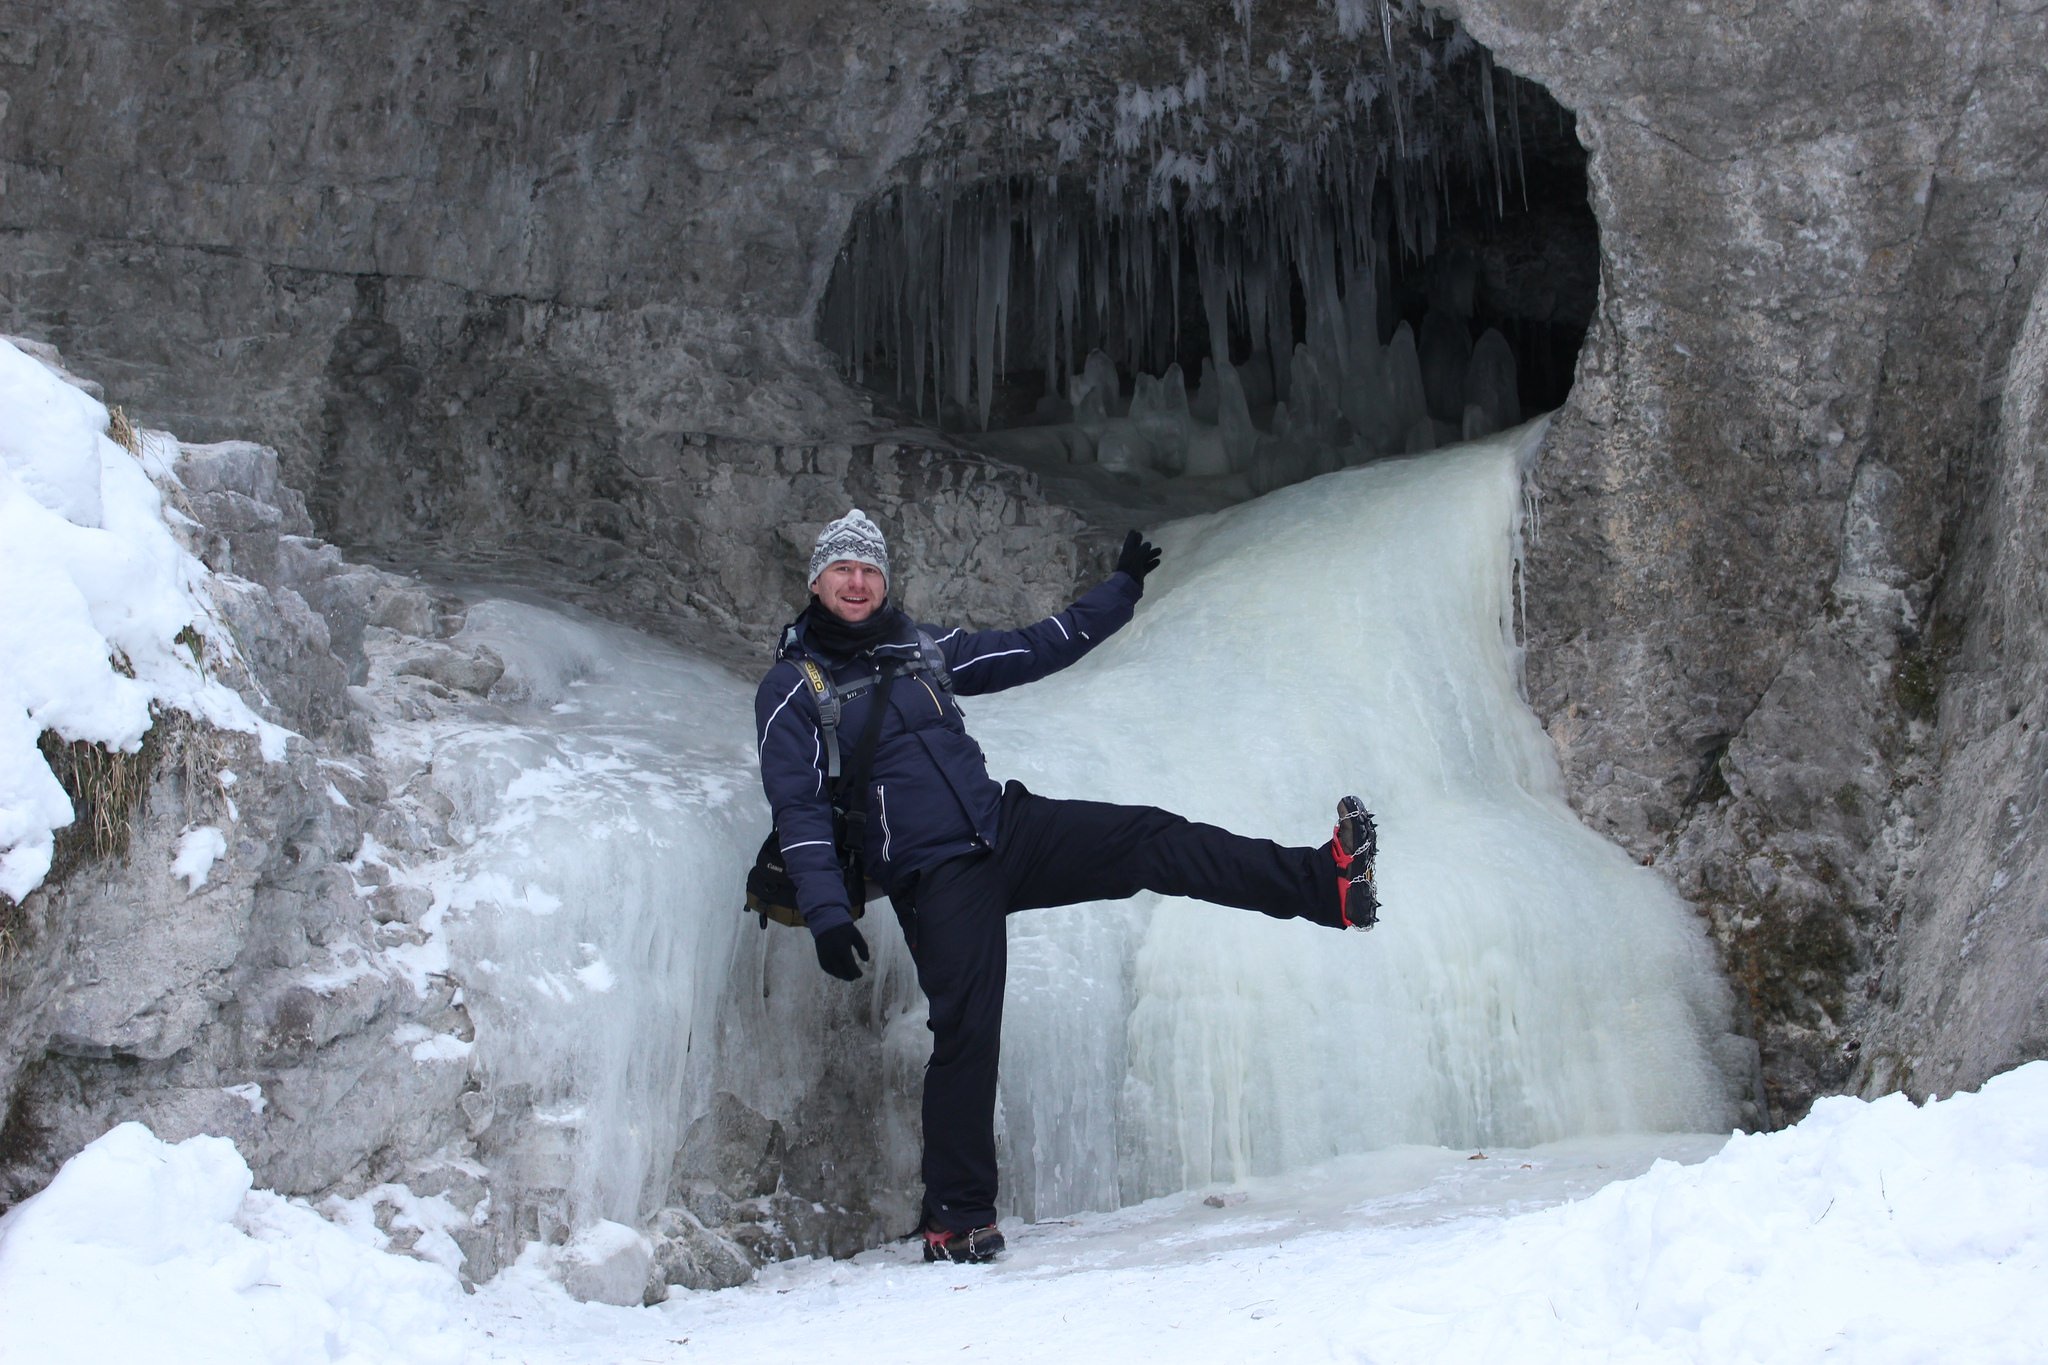 Suchá Belá gorge, winter hiking trip, Košice region, Slovakia – 11